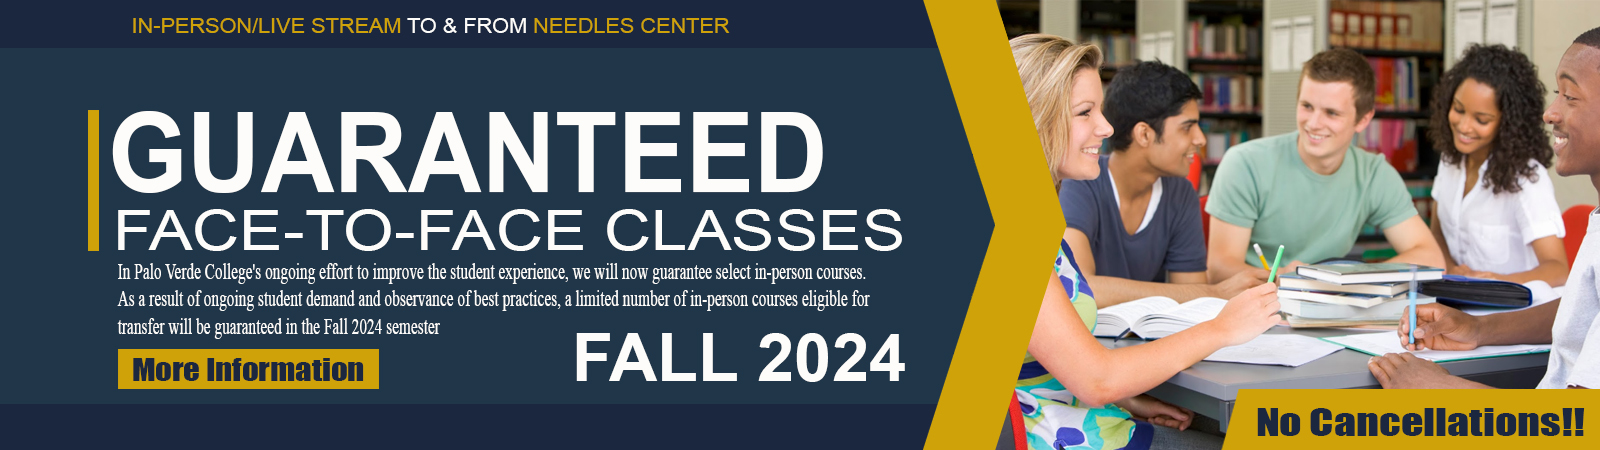 Guaranteed Classes Fall 2024